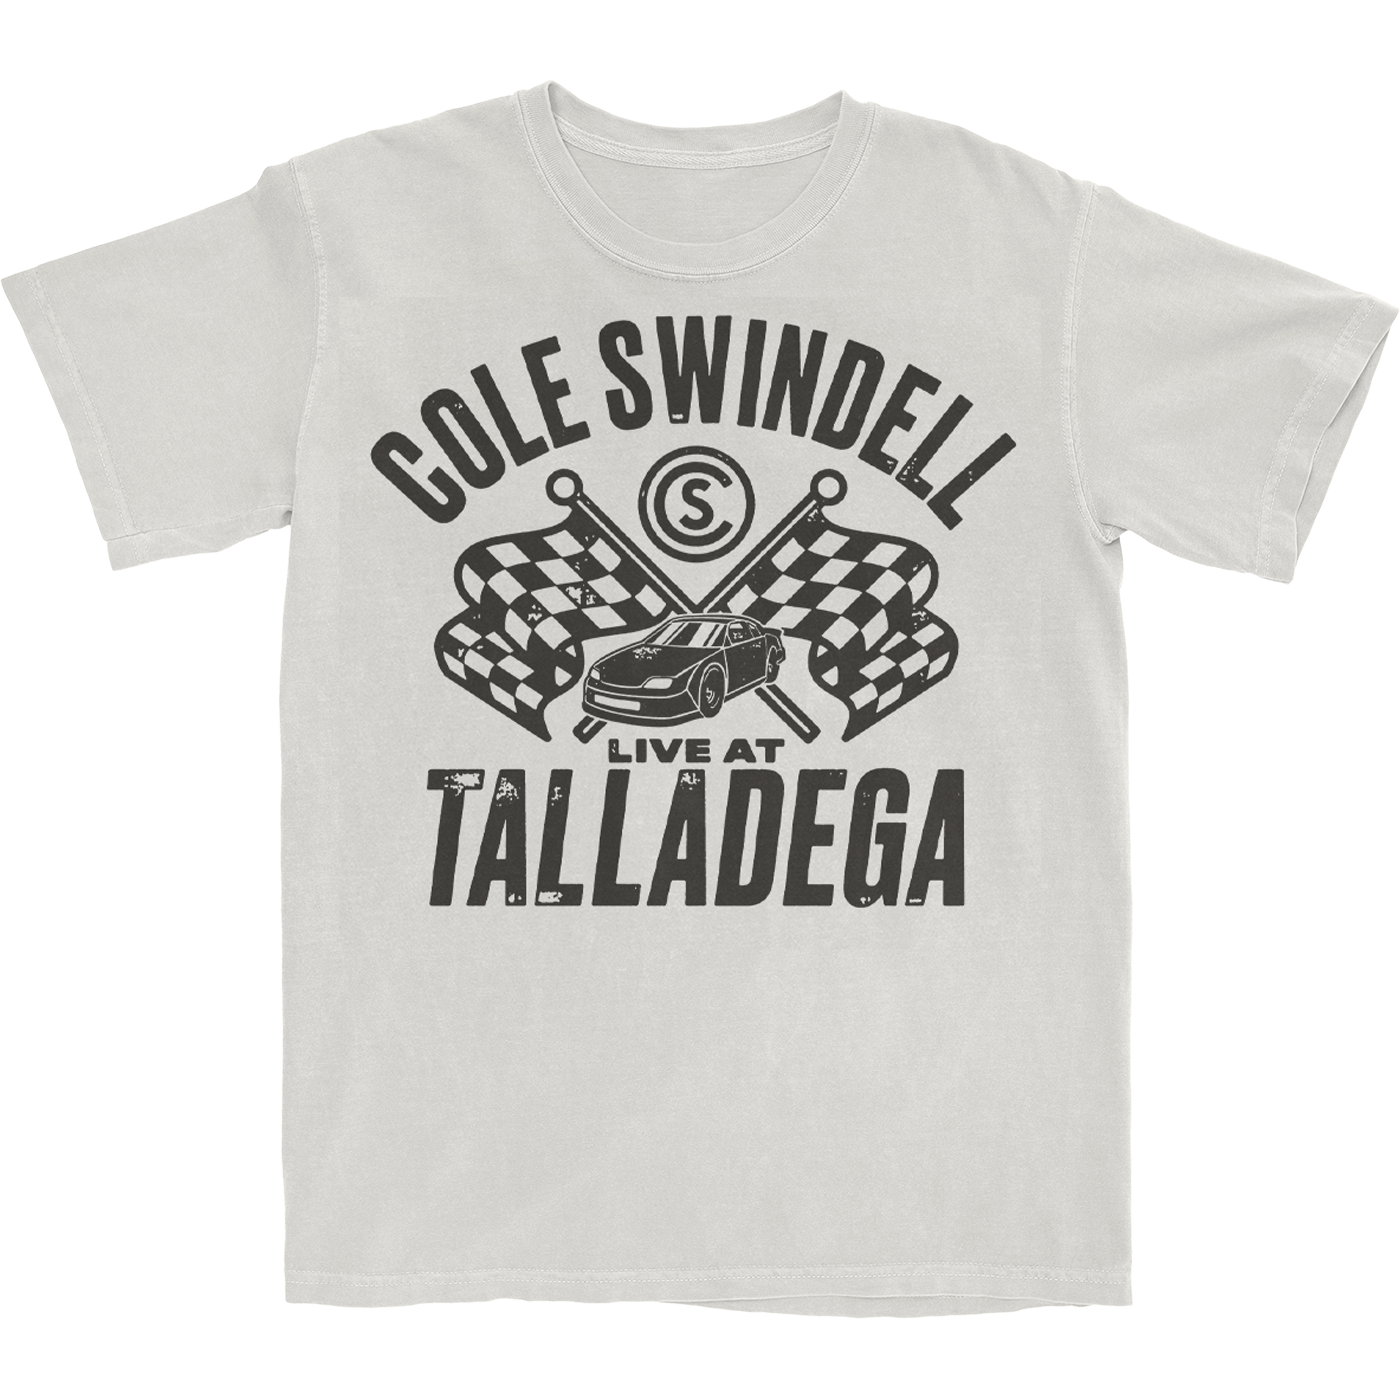 Live at Talladega T-Shirt